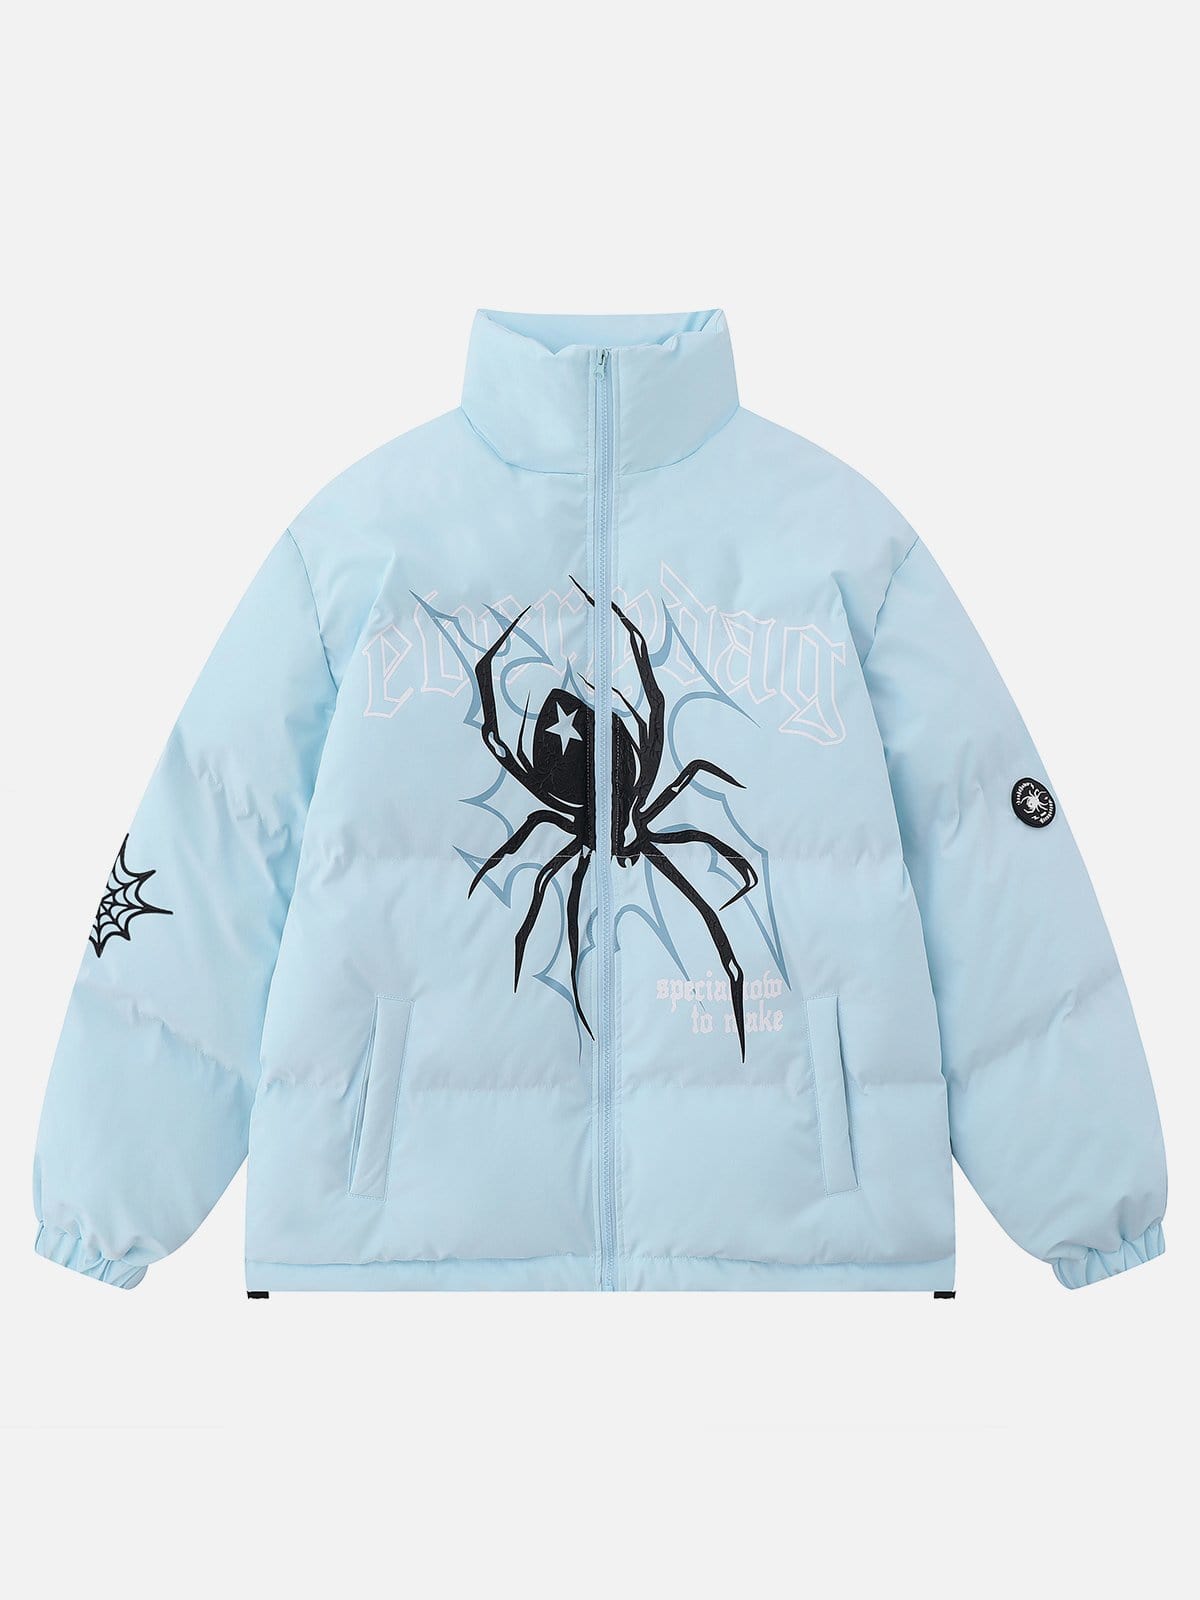 NEV Gothic Letter Spider Print Winter Coat